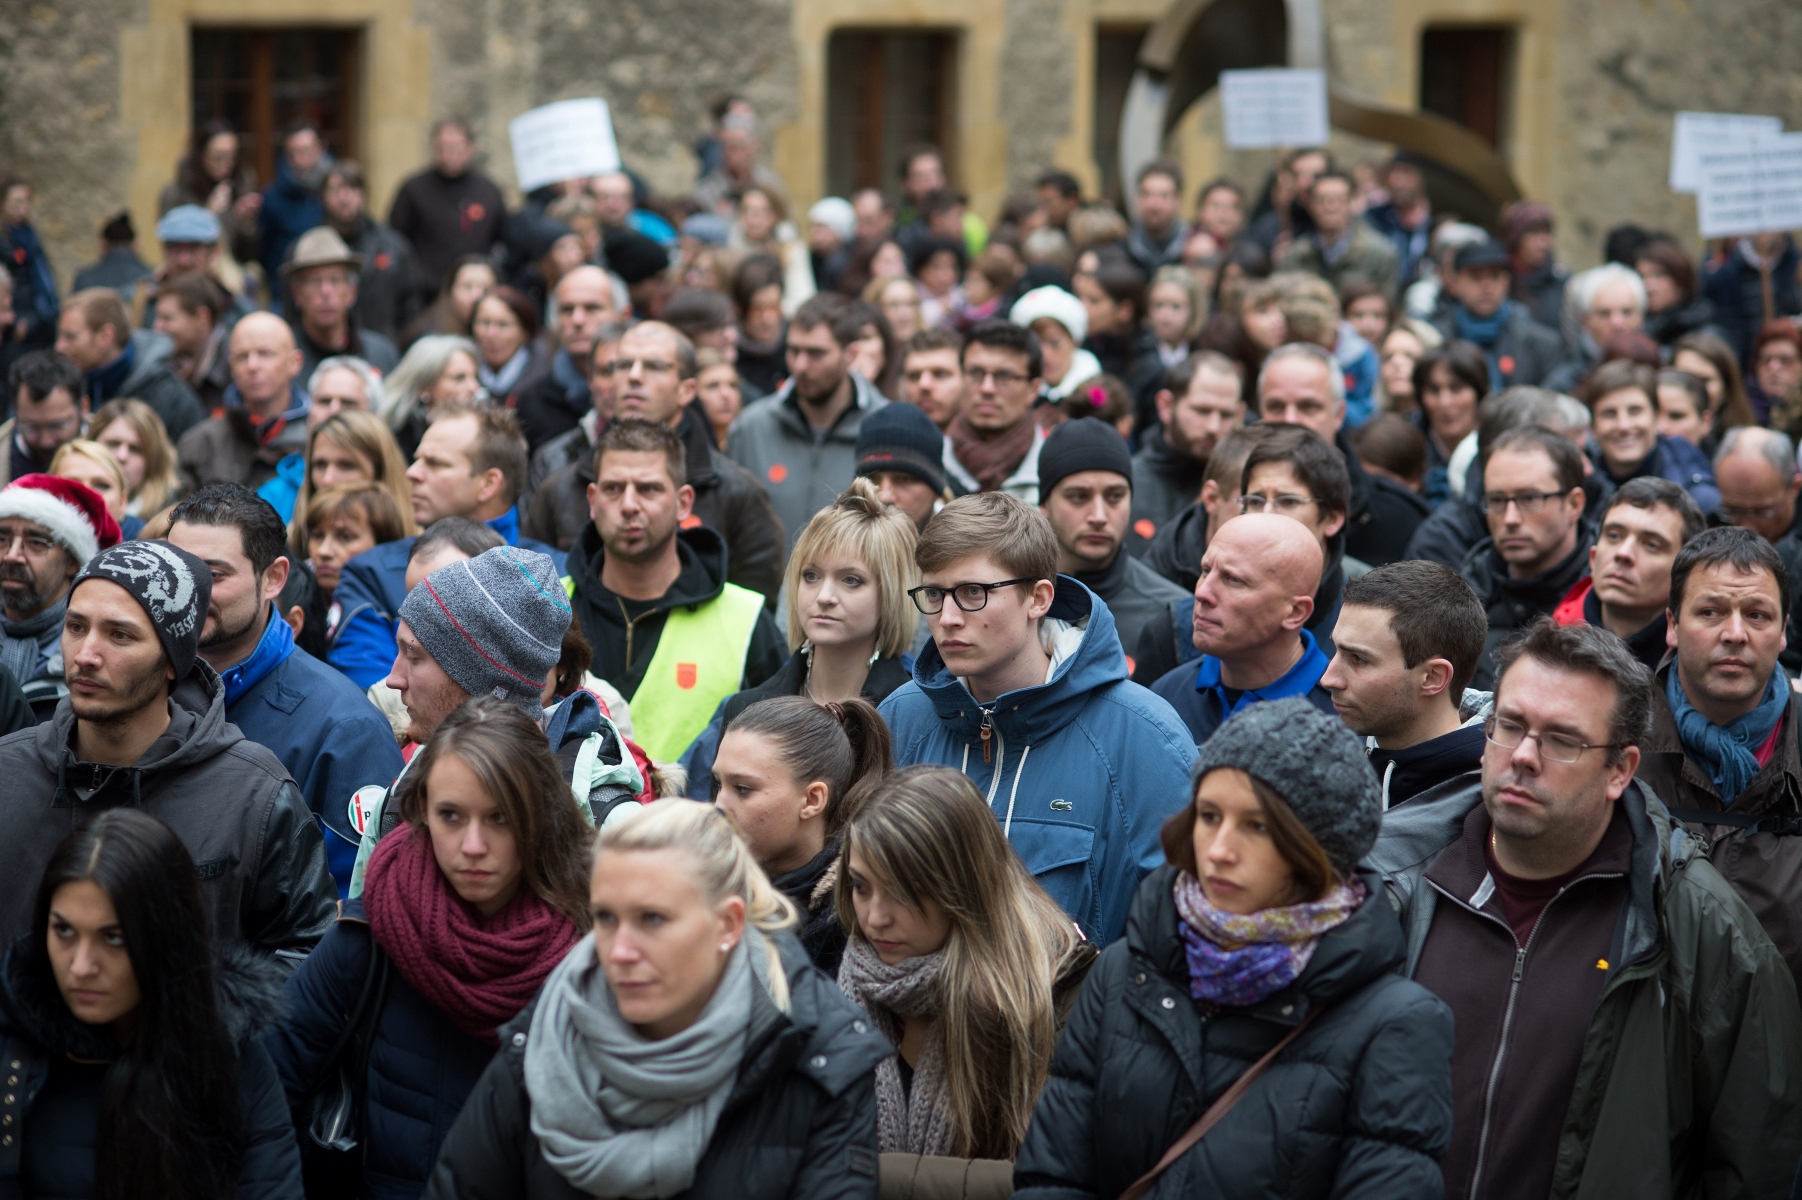 Enseignants et employés de la fonction publique manifestaient au Château en décembre de l'année dernière.  PHOTO DAVID MARCHON